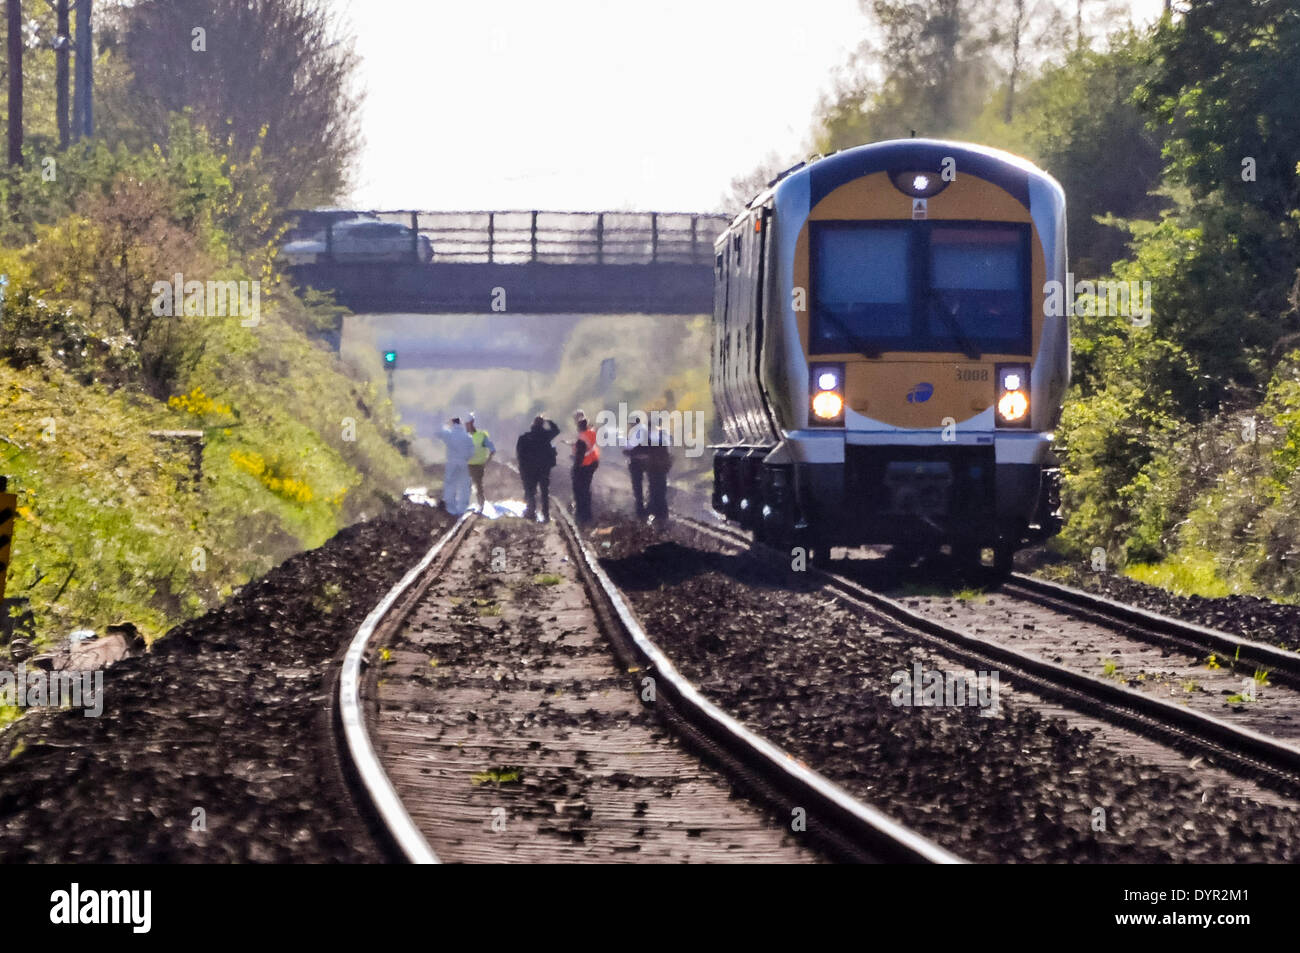 Lurgan, Irlande du Nord. 24 Apr 2014 - La police et le personnel des chemins de fer se rassemblent à la scène sur une voie de chemin de fer à l'endroit où une personne a été tué après avoir été frappé par un train Crédit : Stephen Barnes/Alamy Live News Banque D'Images